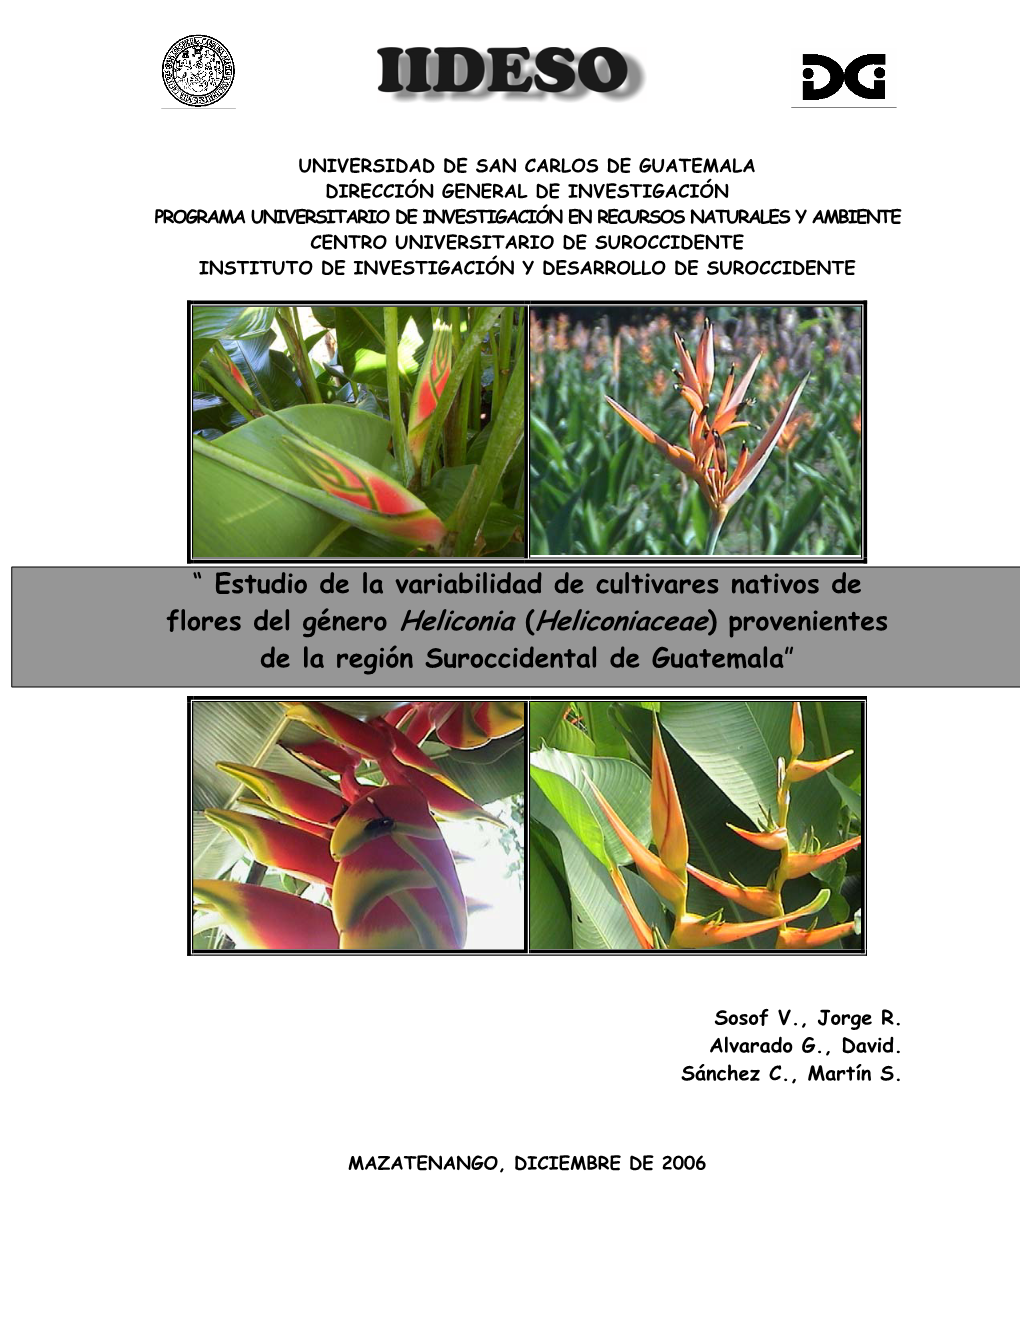 Estudio De La Variabilidad De Cultivares Nativos De Flores Del Género Heliconia (Heliconiaceae) Provenientes De La Región Suroccidental De Guatemala”